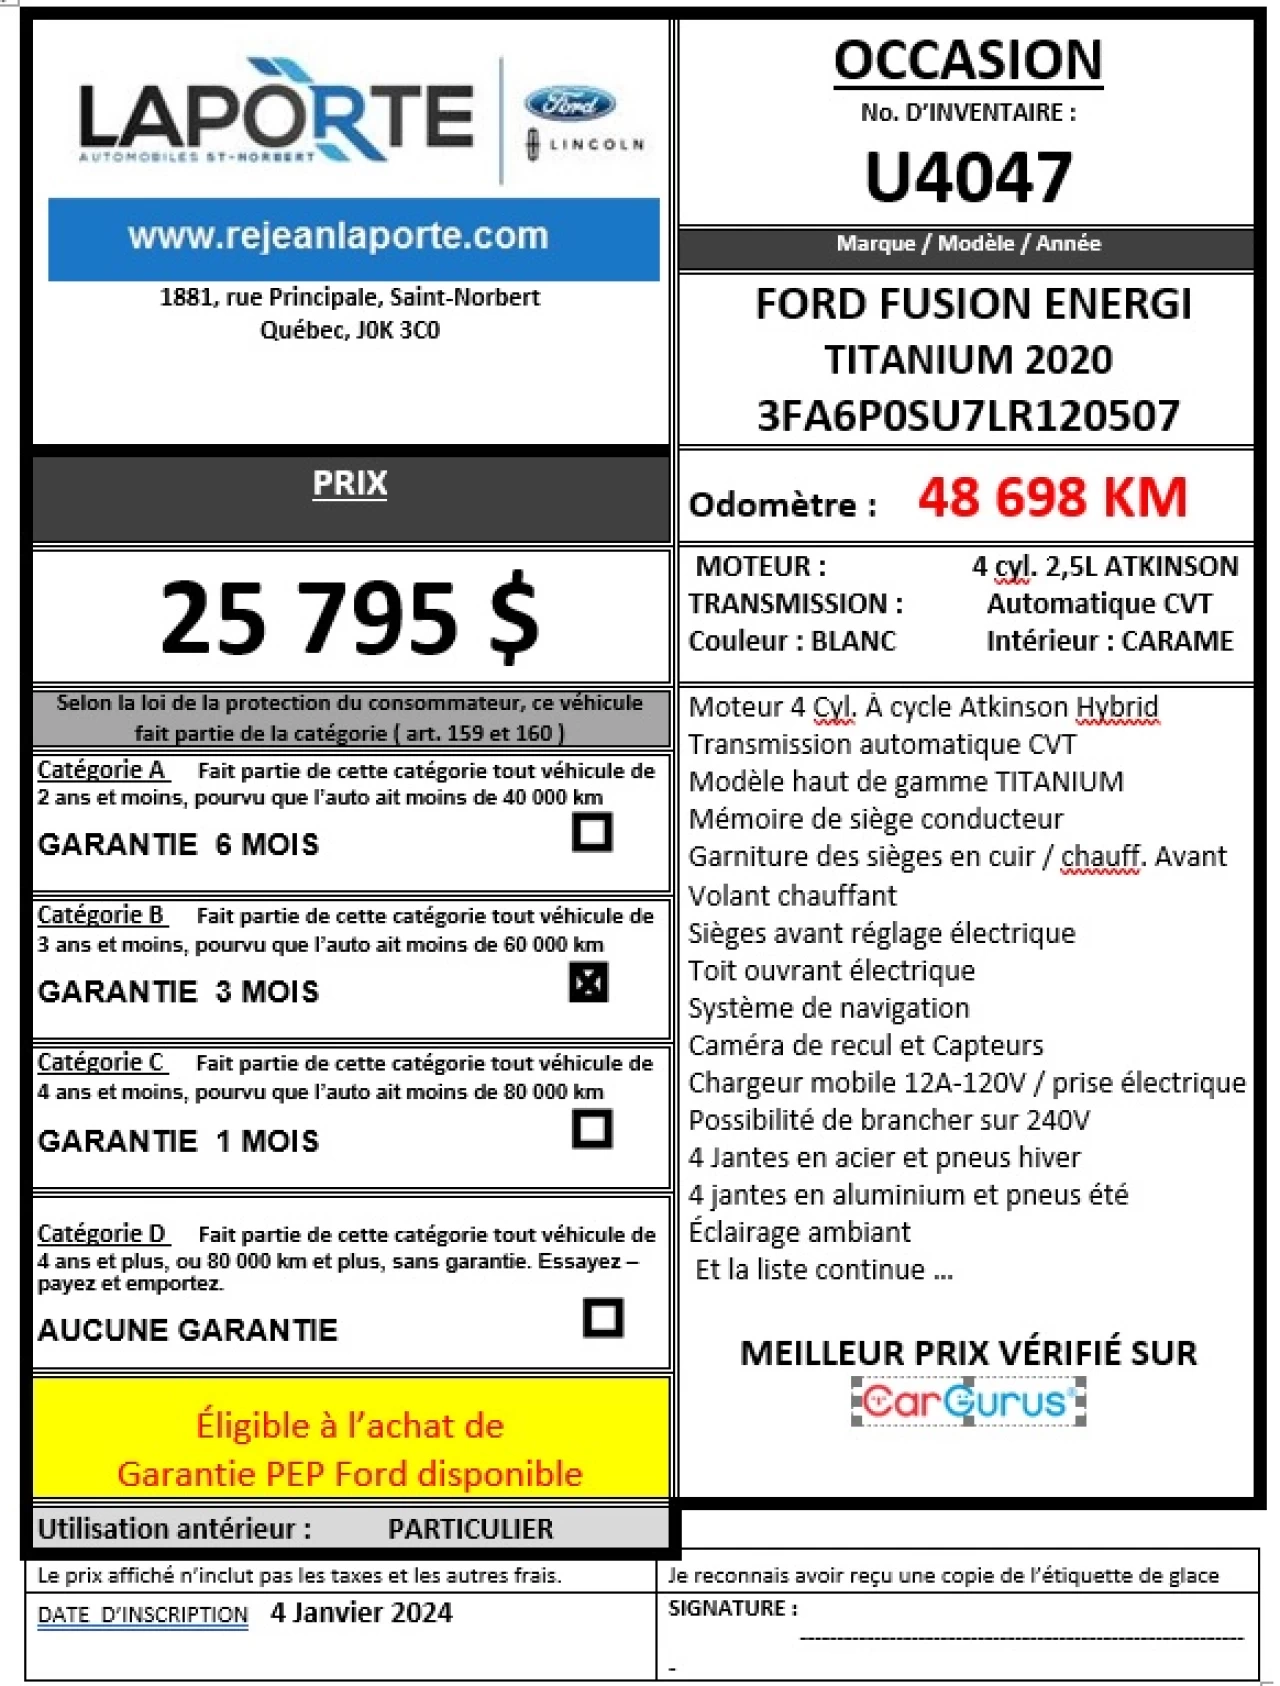 2020 Ford Fusion Energi Titanium Titanium Image principale